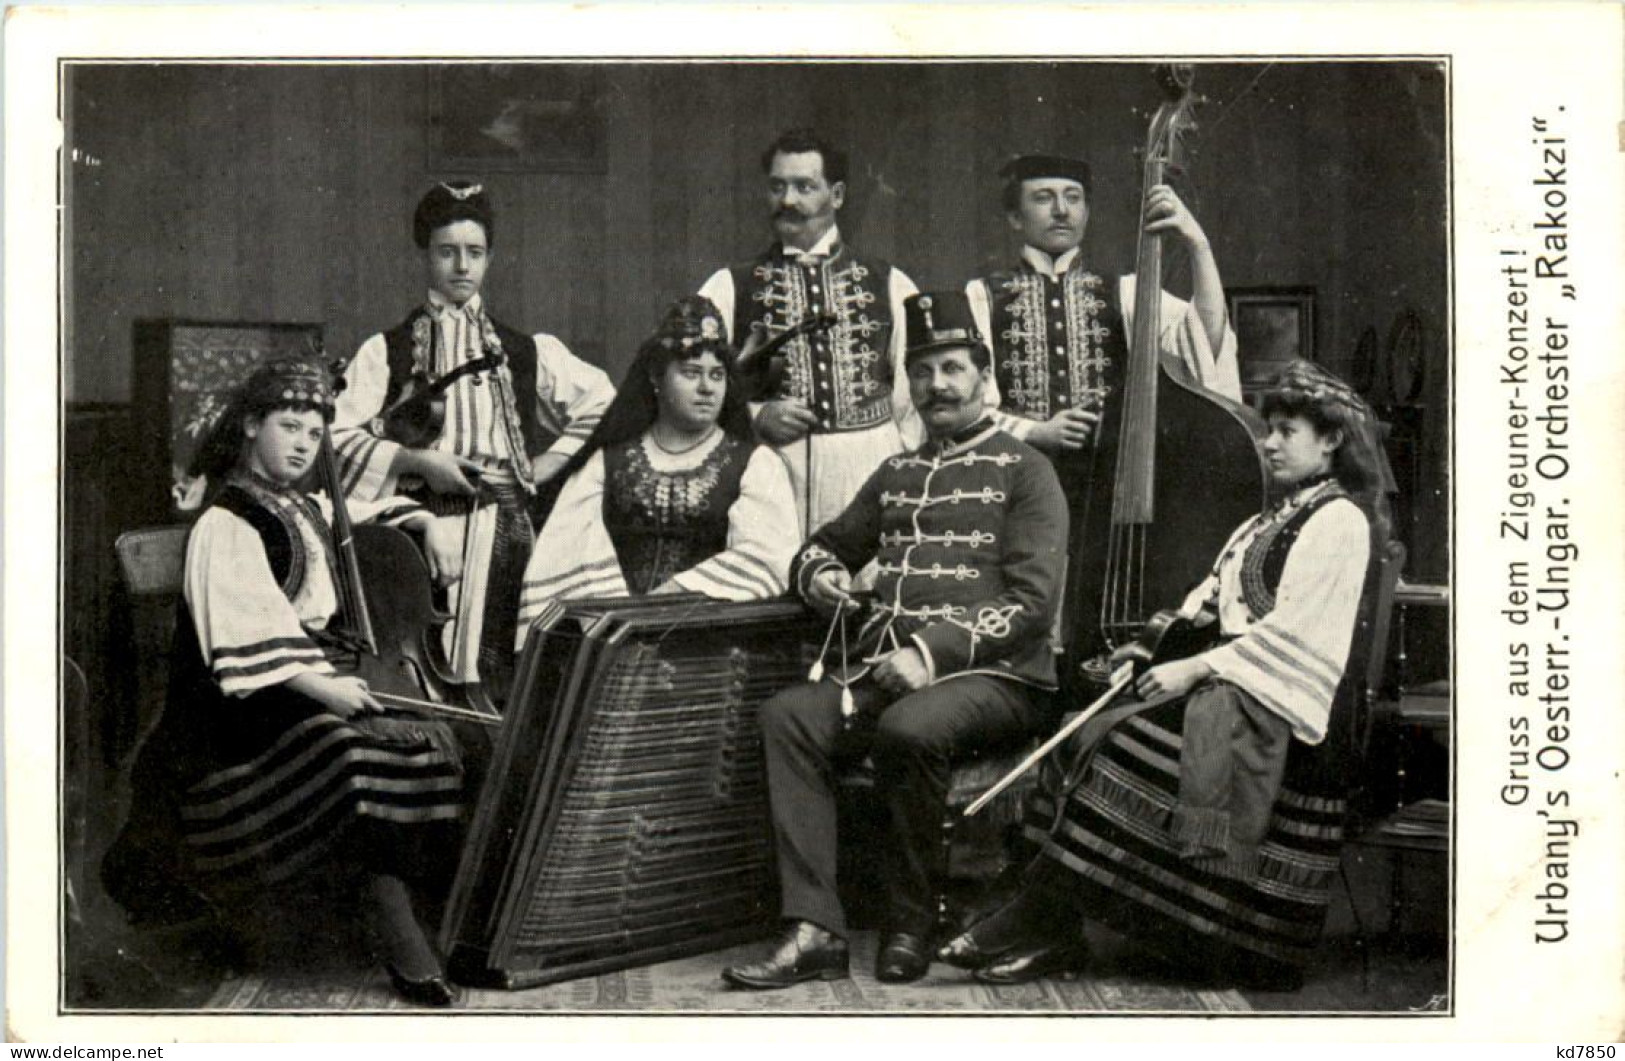 Gruss Aus Dem Zigeuner Concert - Zangers En Musicus